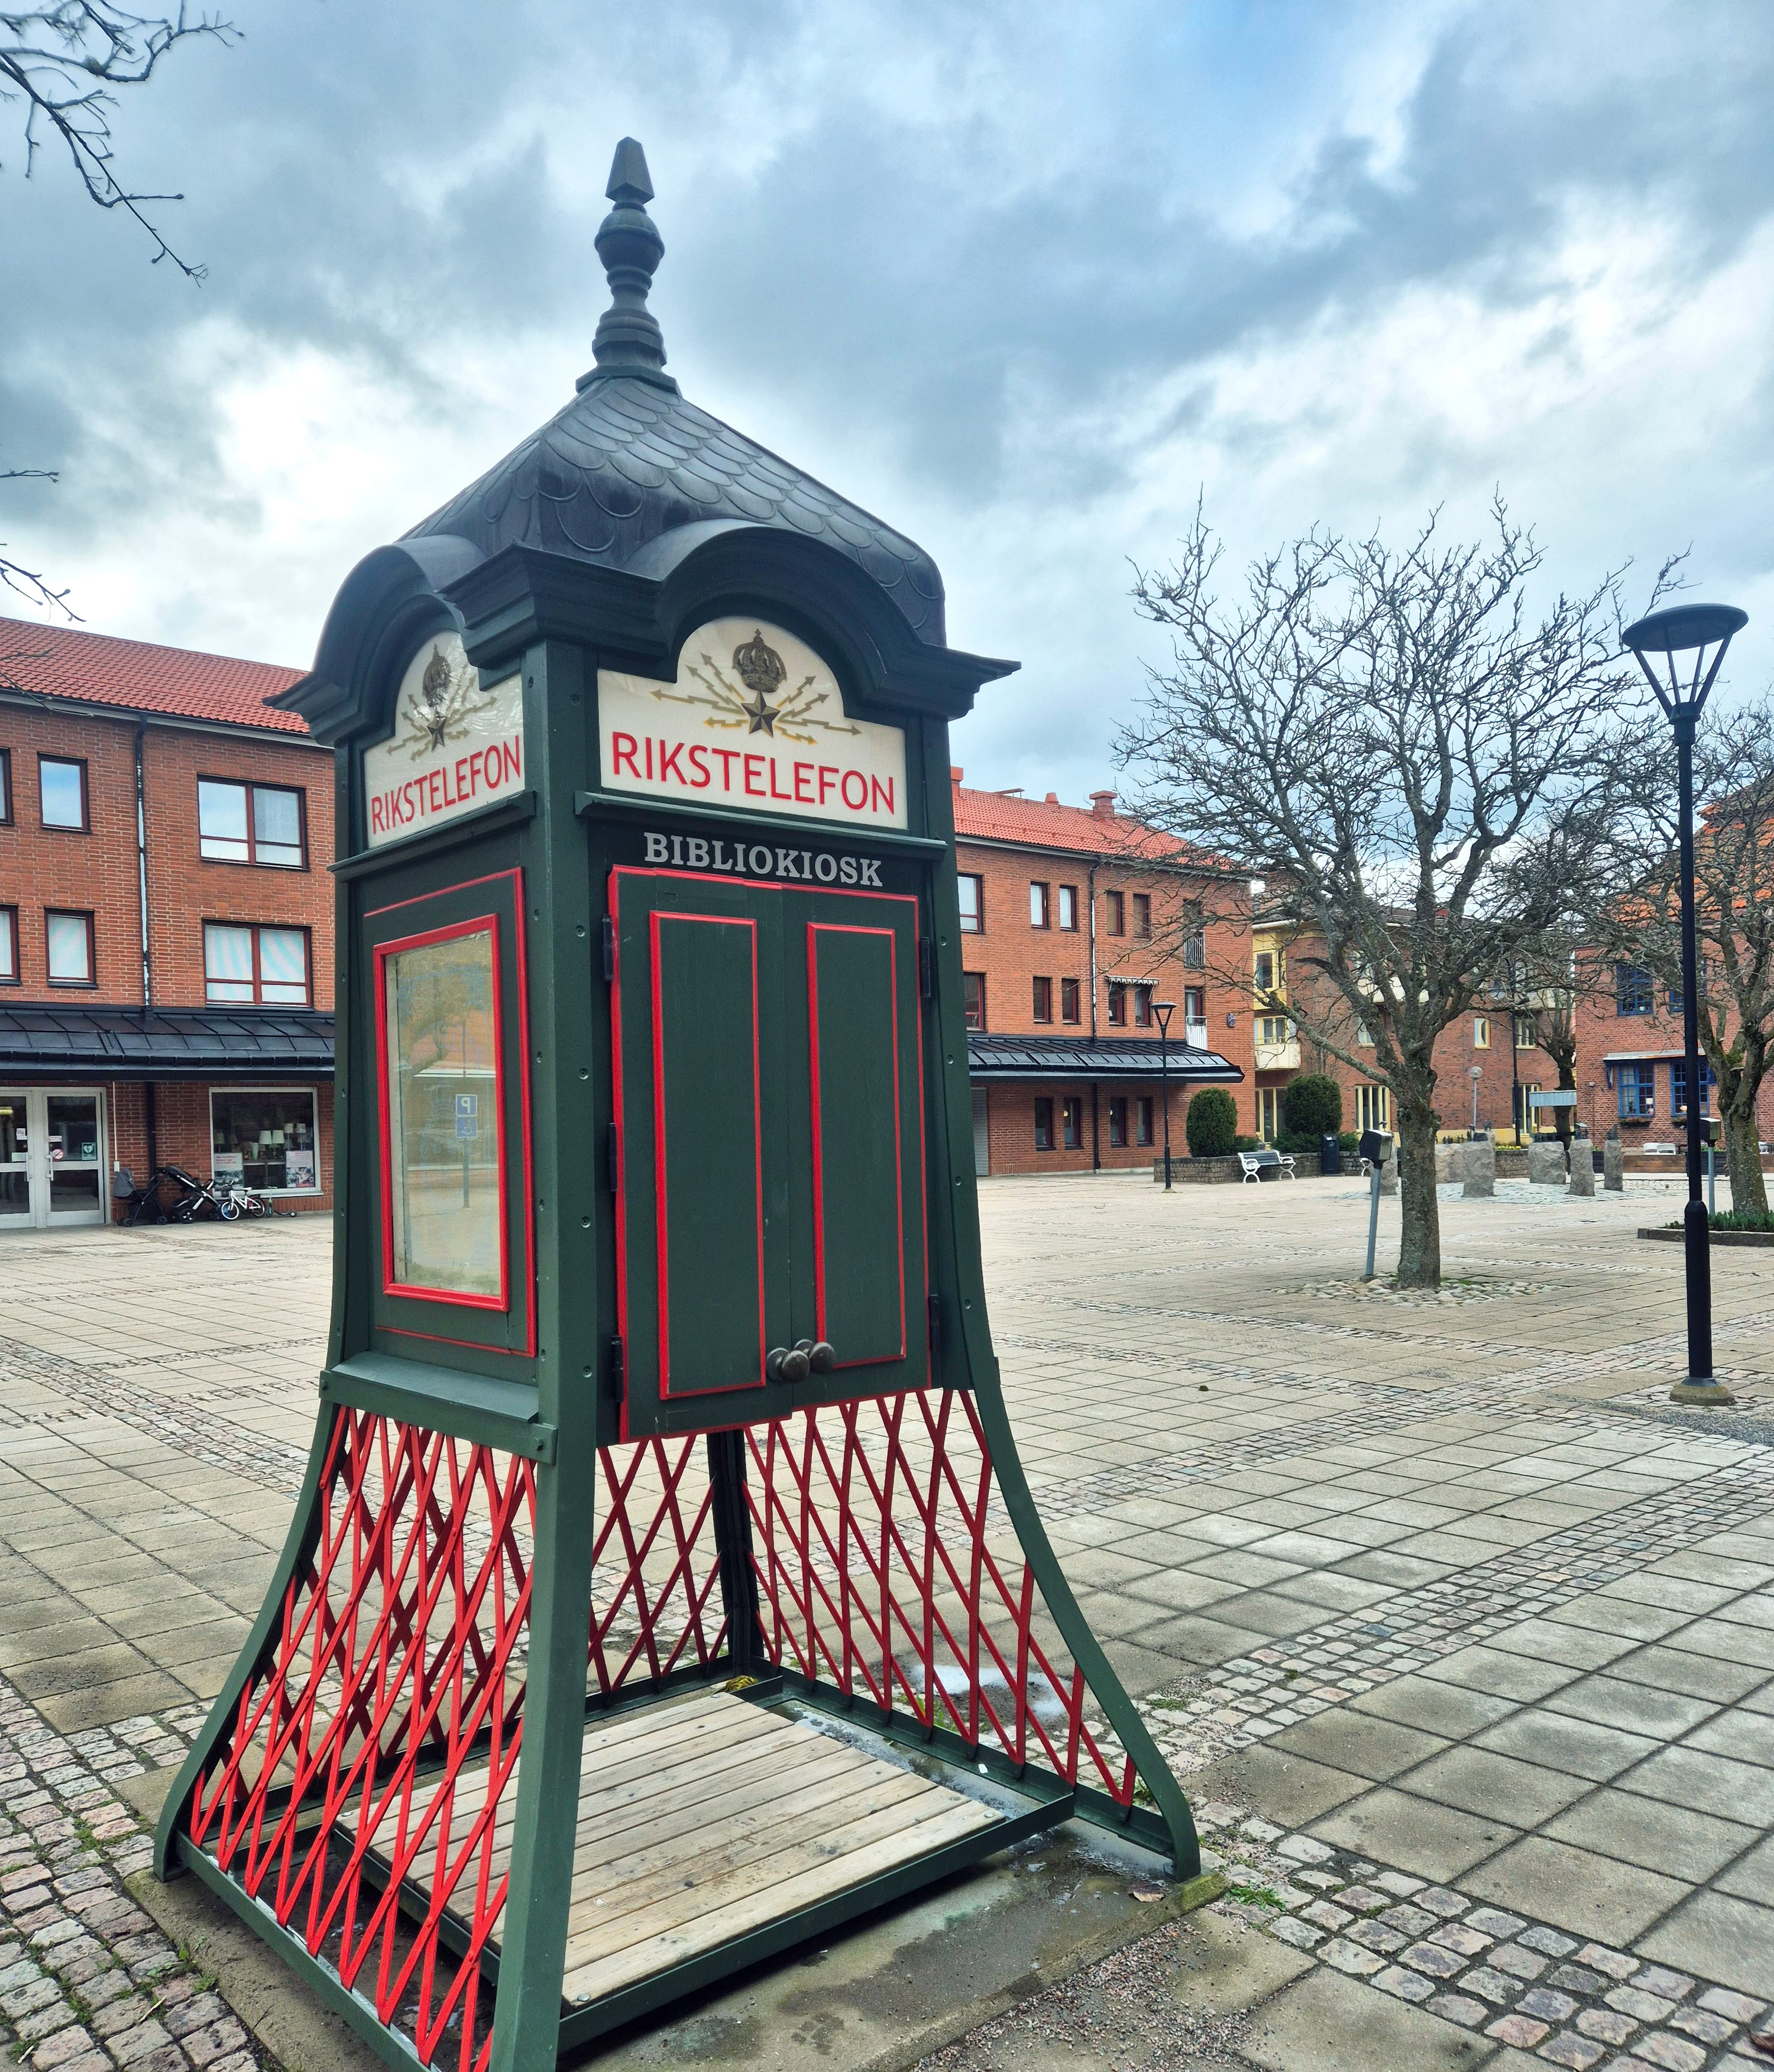 Bilden visar rikstelefonkiosken på torget i Skillingaryd, en grön telefonkiosk med röda detaljer. Ovanför dörrarna står det "Bibliokiosk" med vita bokstäver.